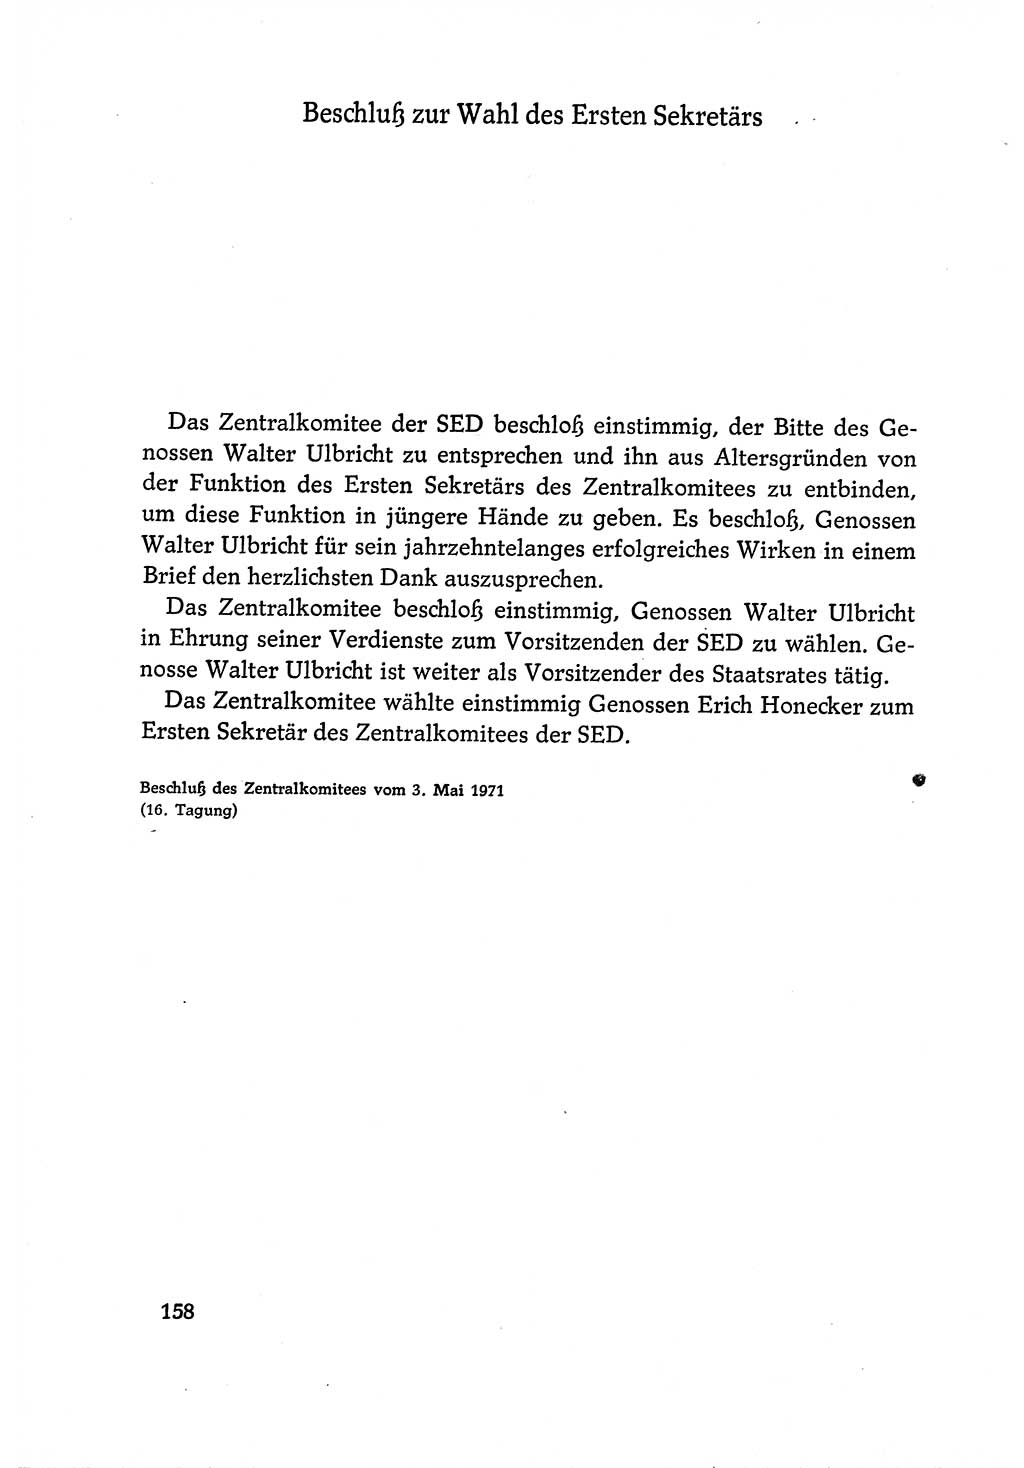 Dokumente der Sozialistischen Einheitspartei Deutschlands (SED) [Deutsche Demokratische Republik (DDR)] 1970-1971, Seite 158 (Dok. SED DDR 1970-1971, S. 158)